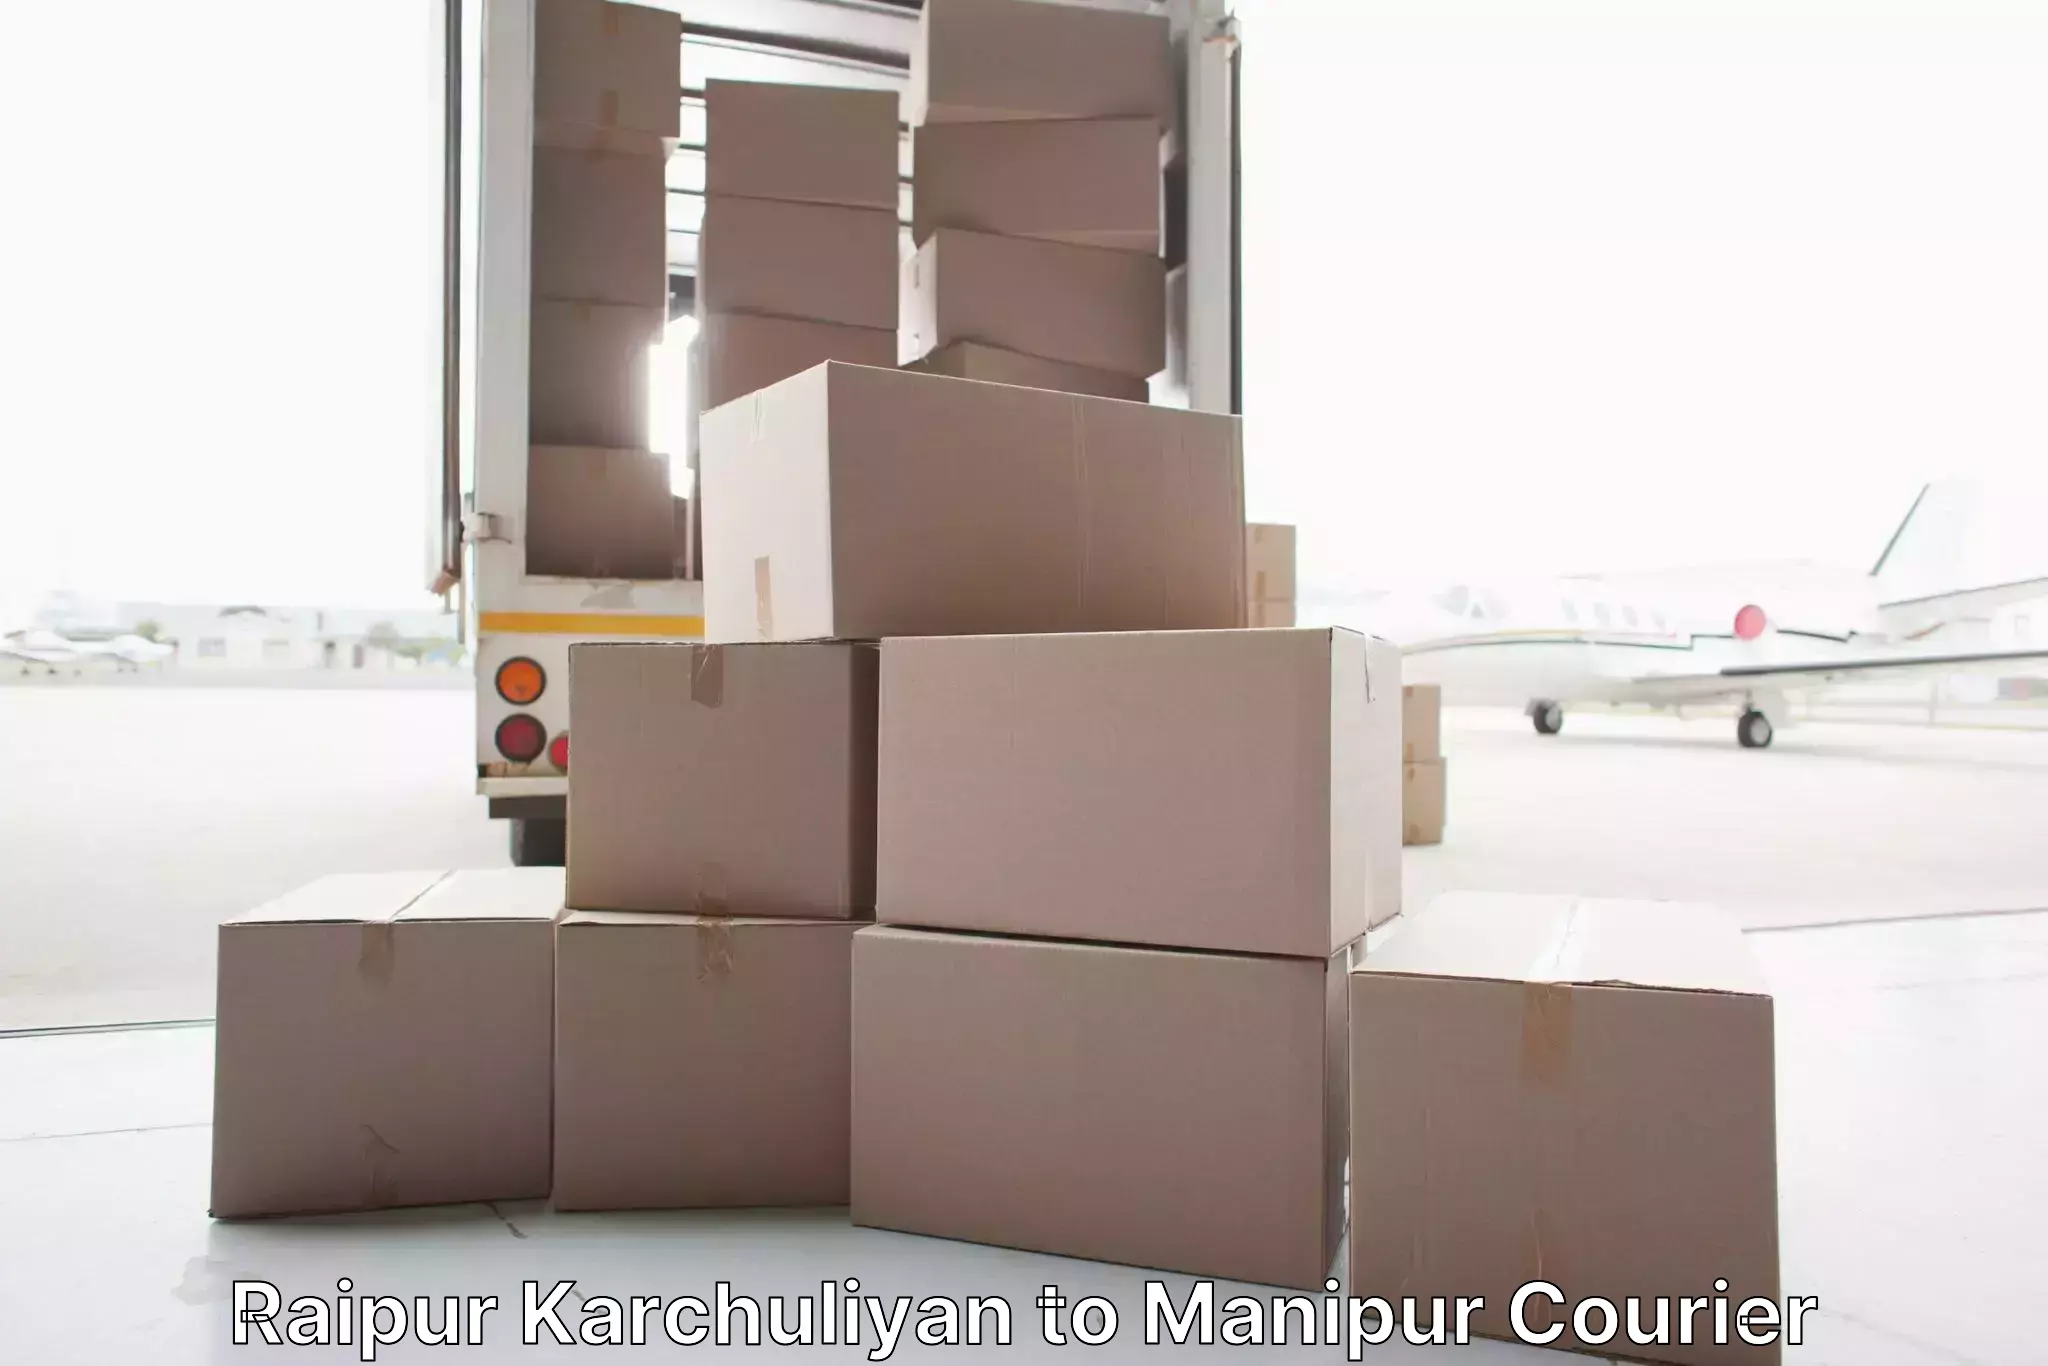 Furniture moving experts Raipur Karchuliyan to Manipur